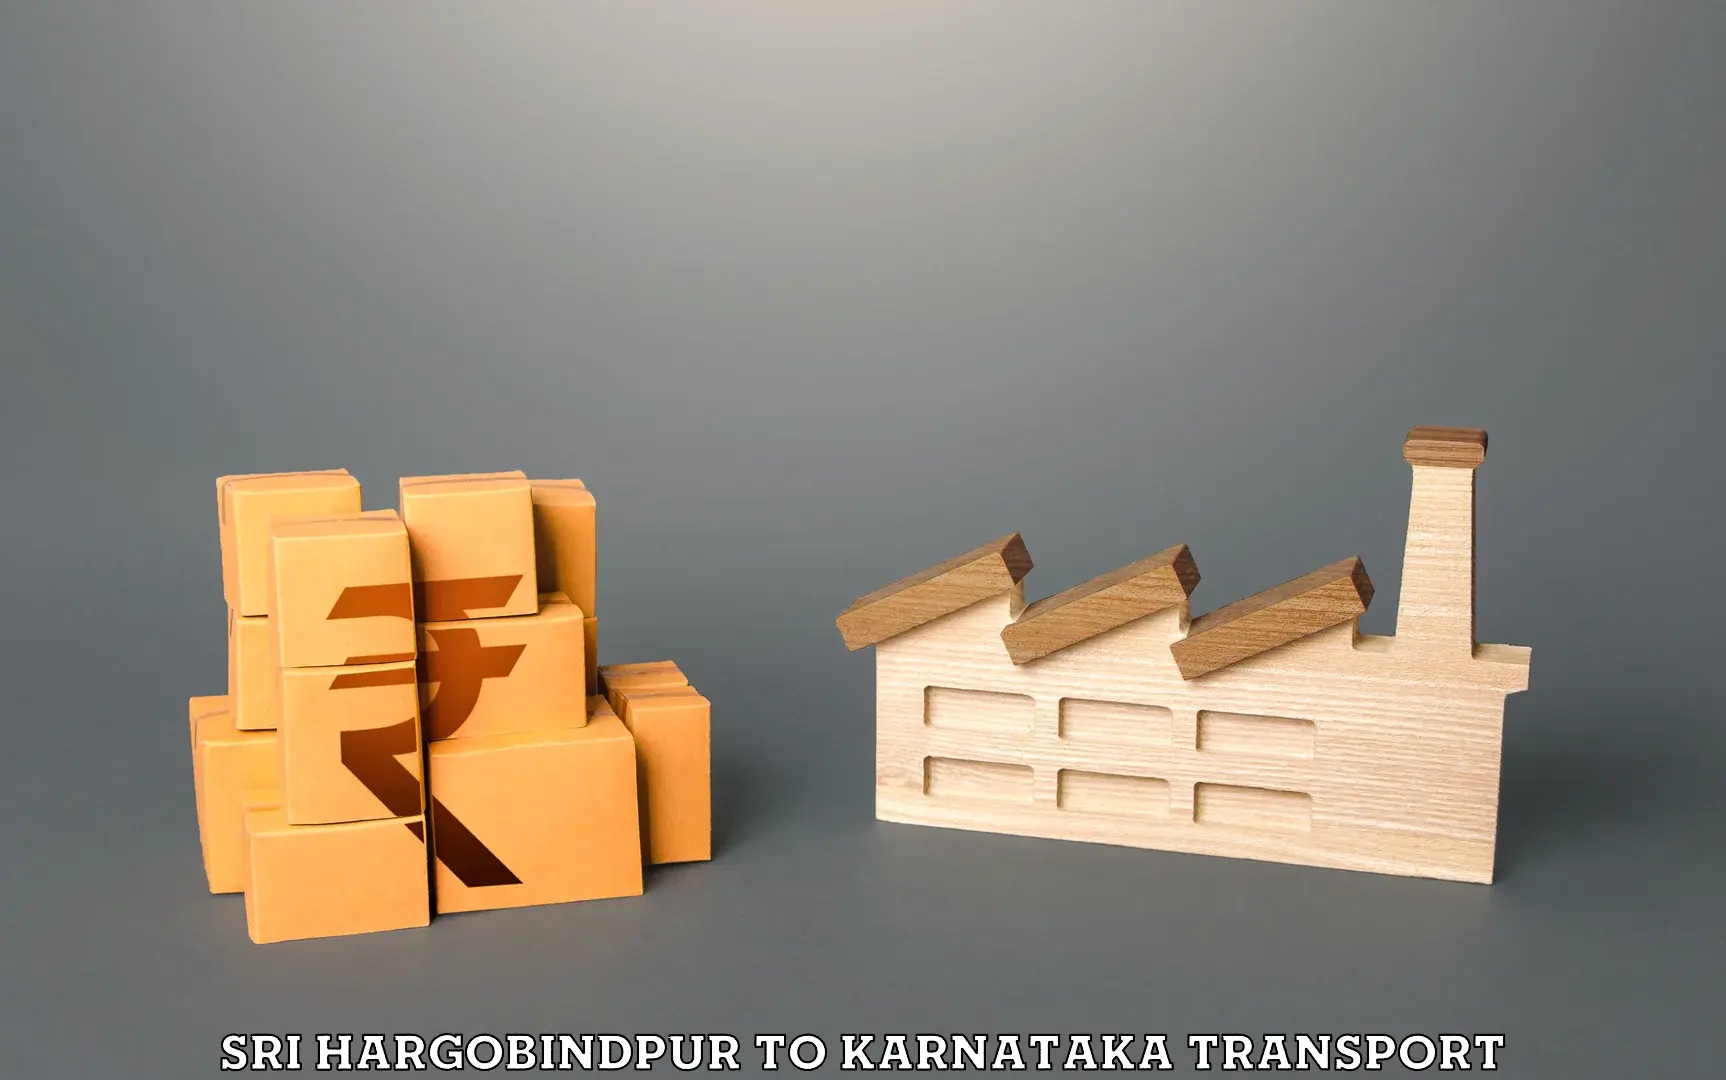 Furniture transport service Sri Hargobindpur to Karnataka